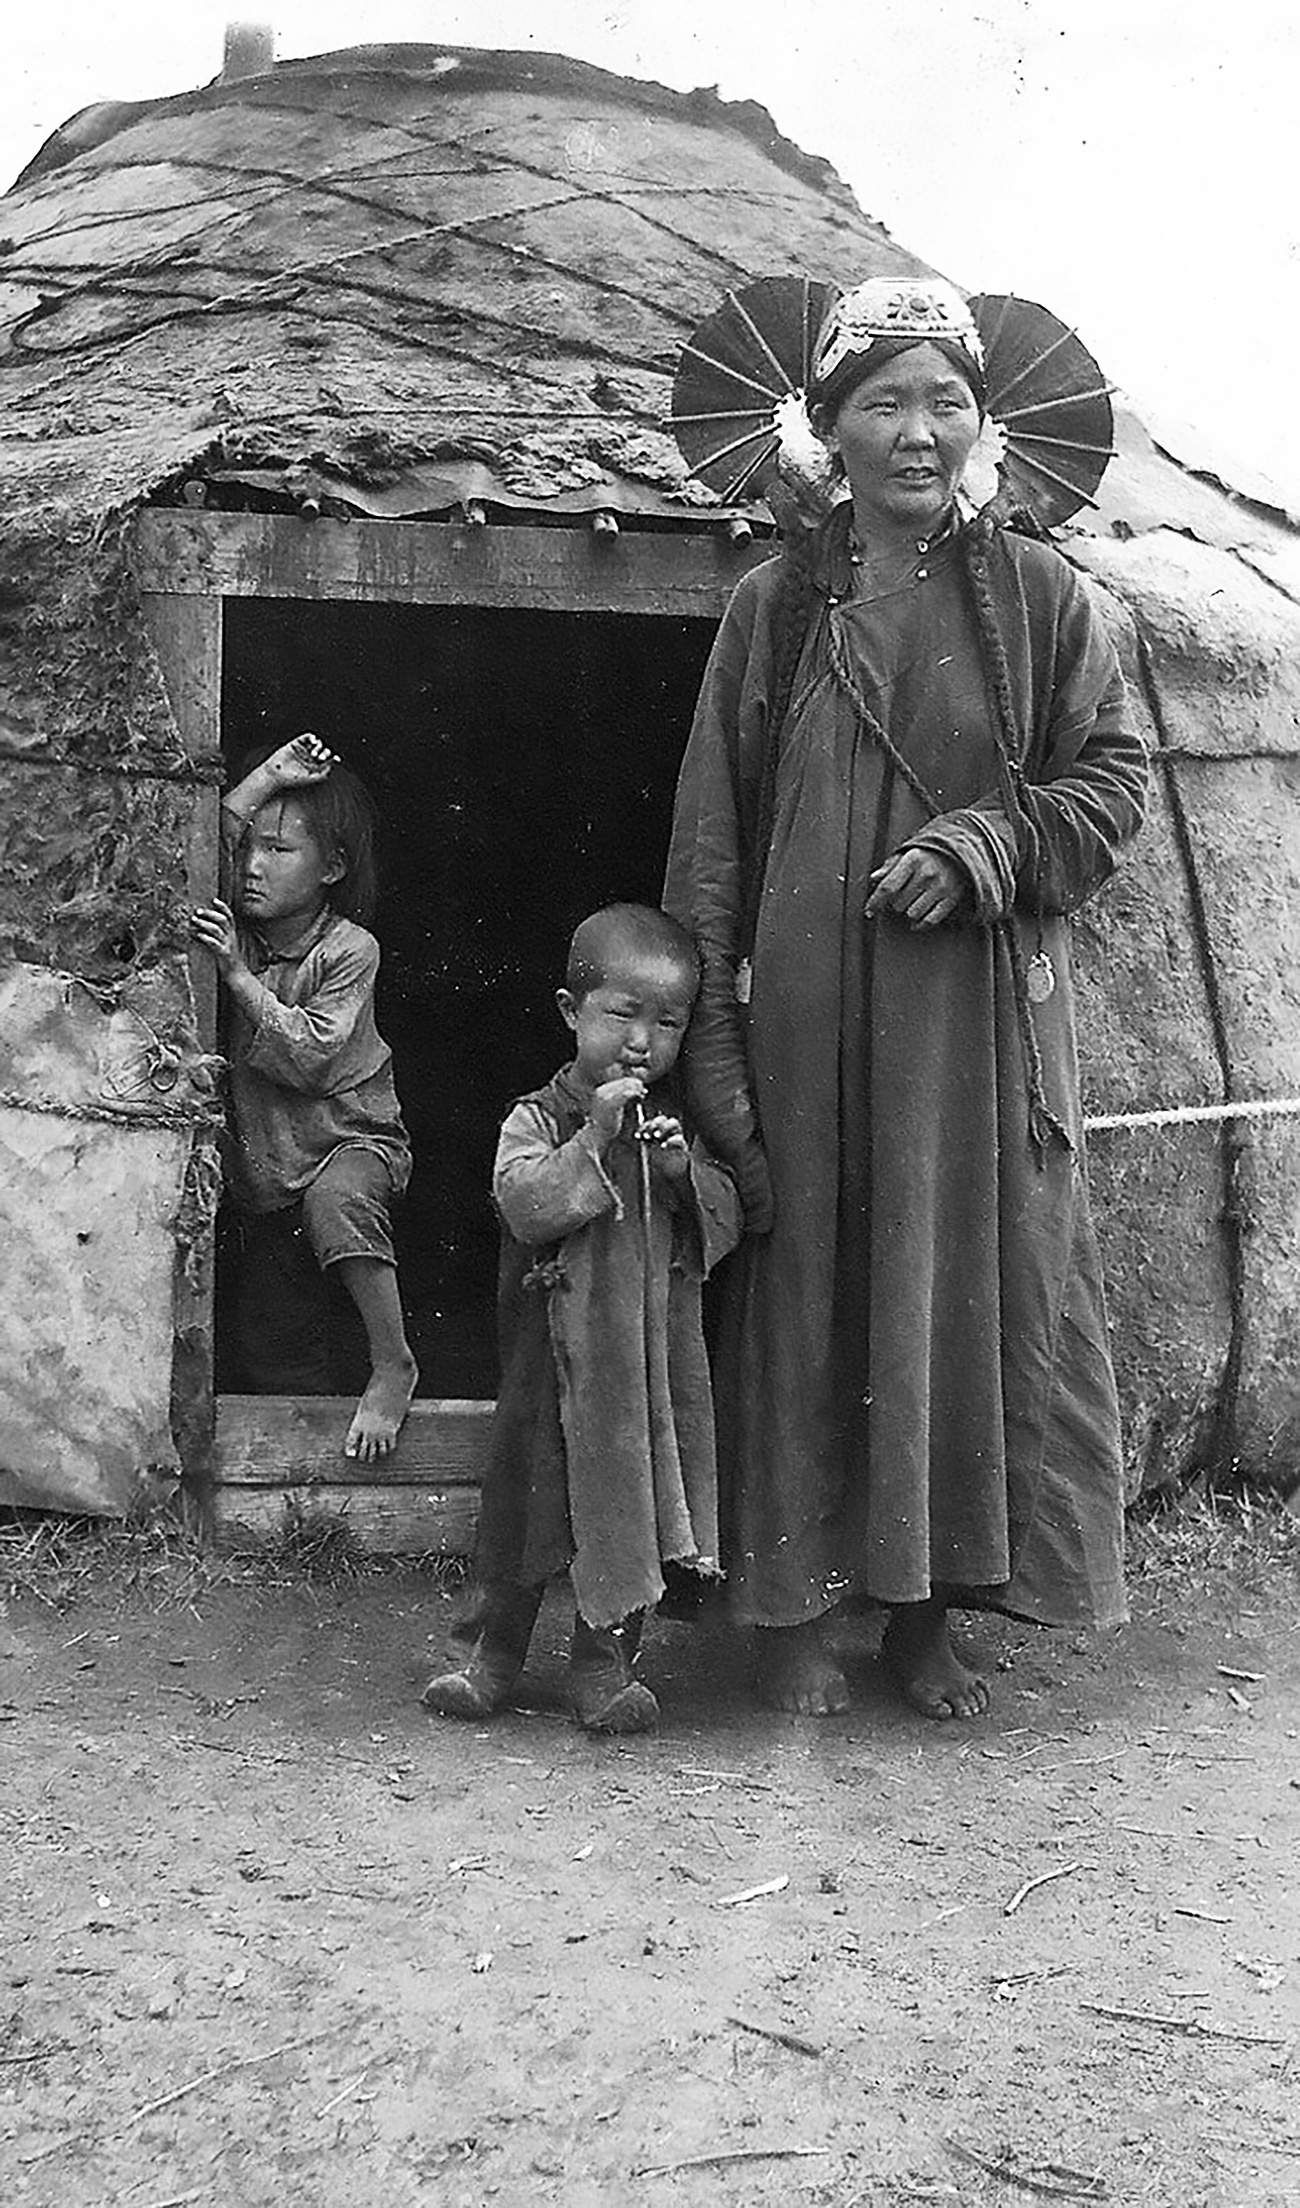 Mongólia no início do século 20. Foto: Arquivo